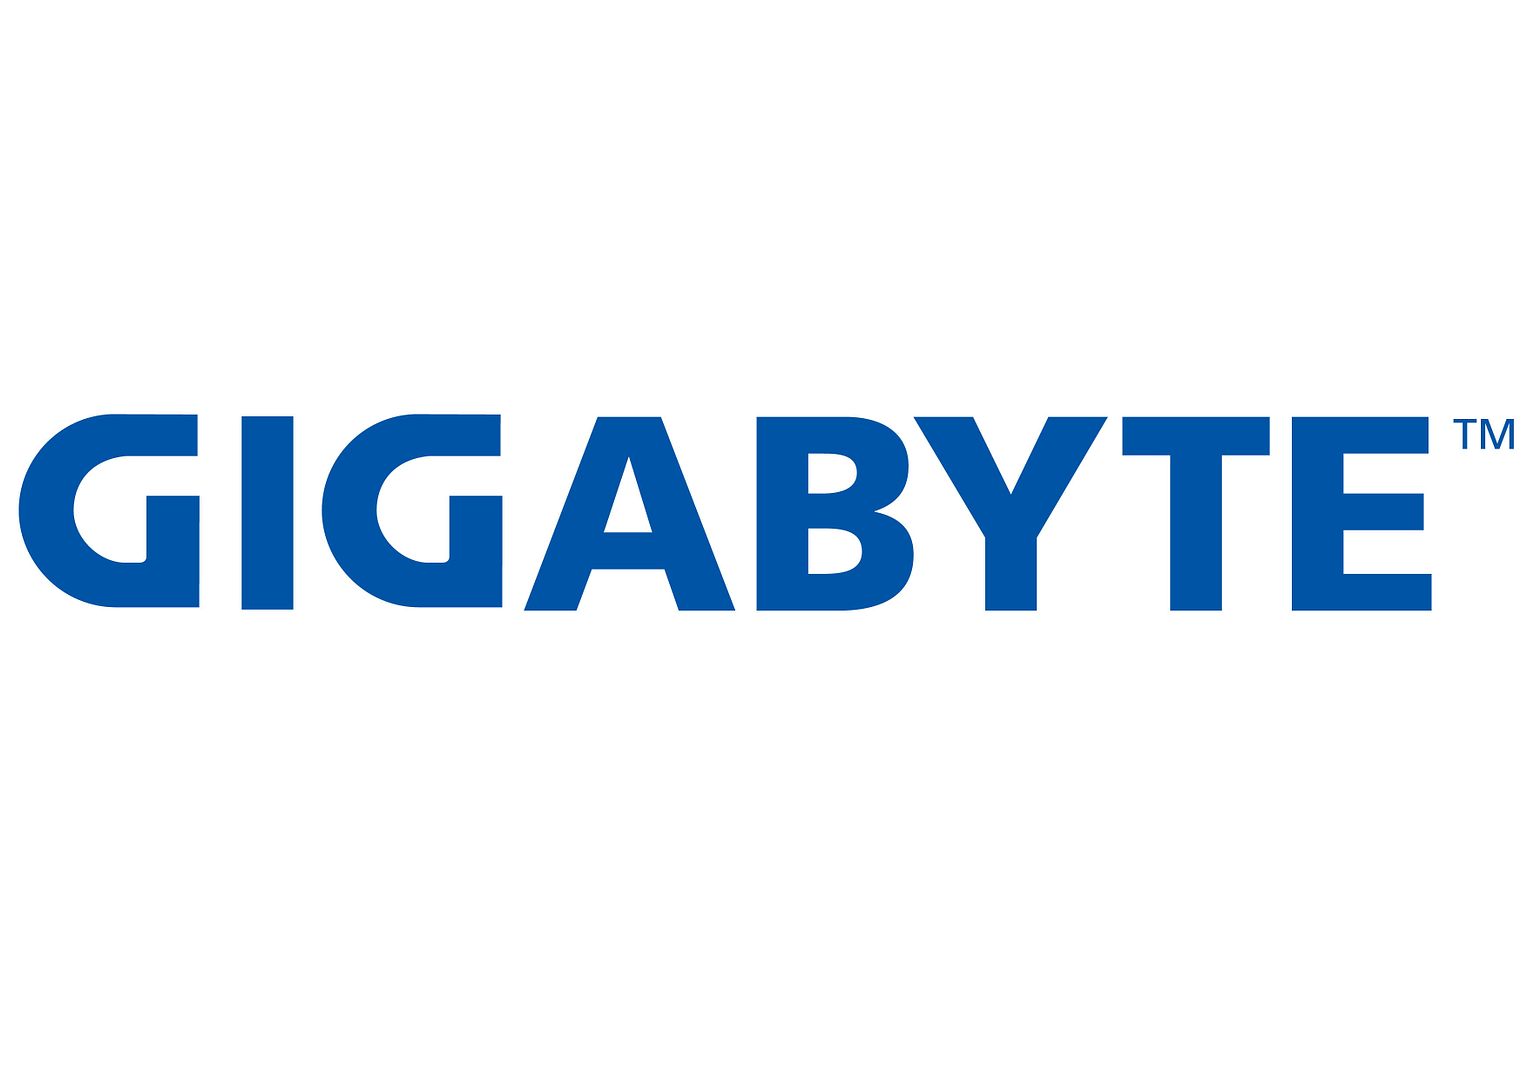 gigabyte_logo.jpg